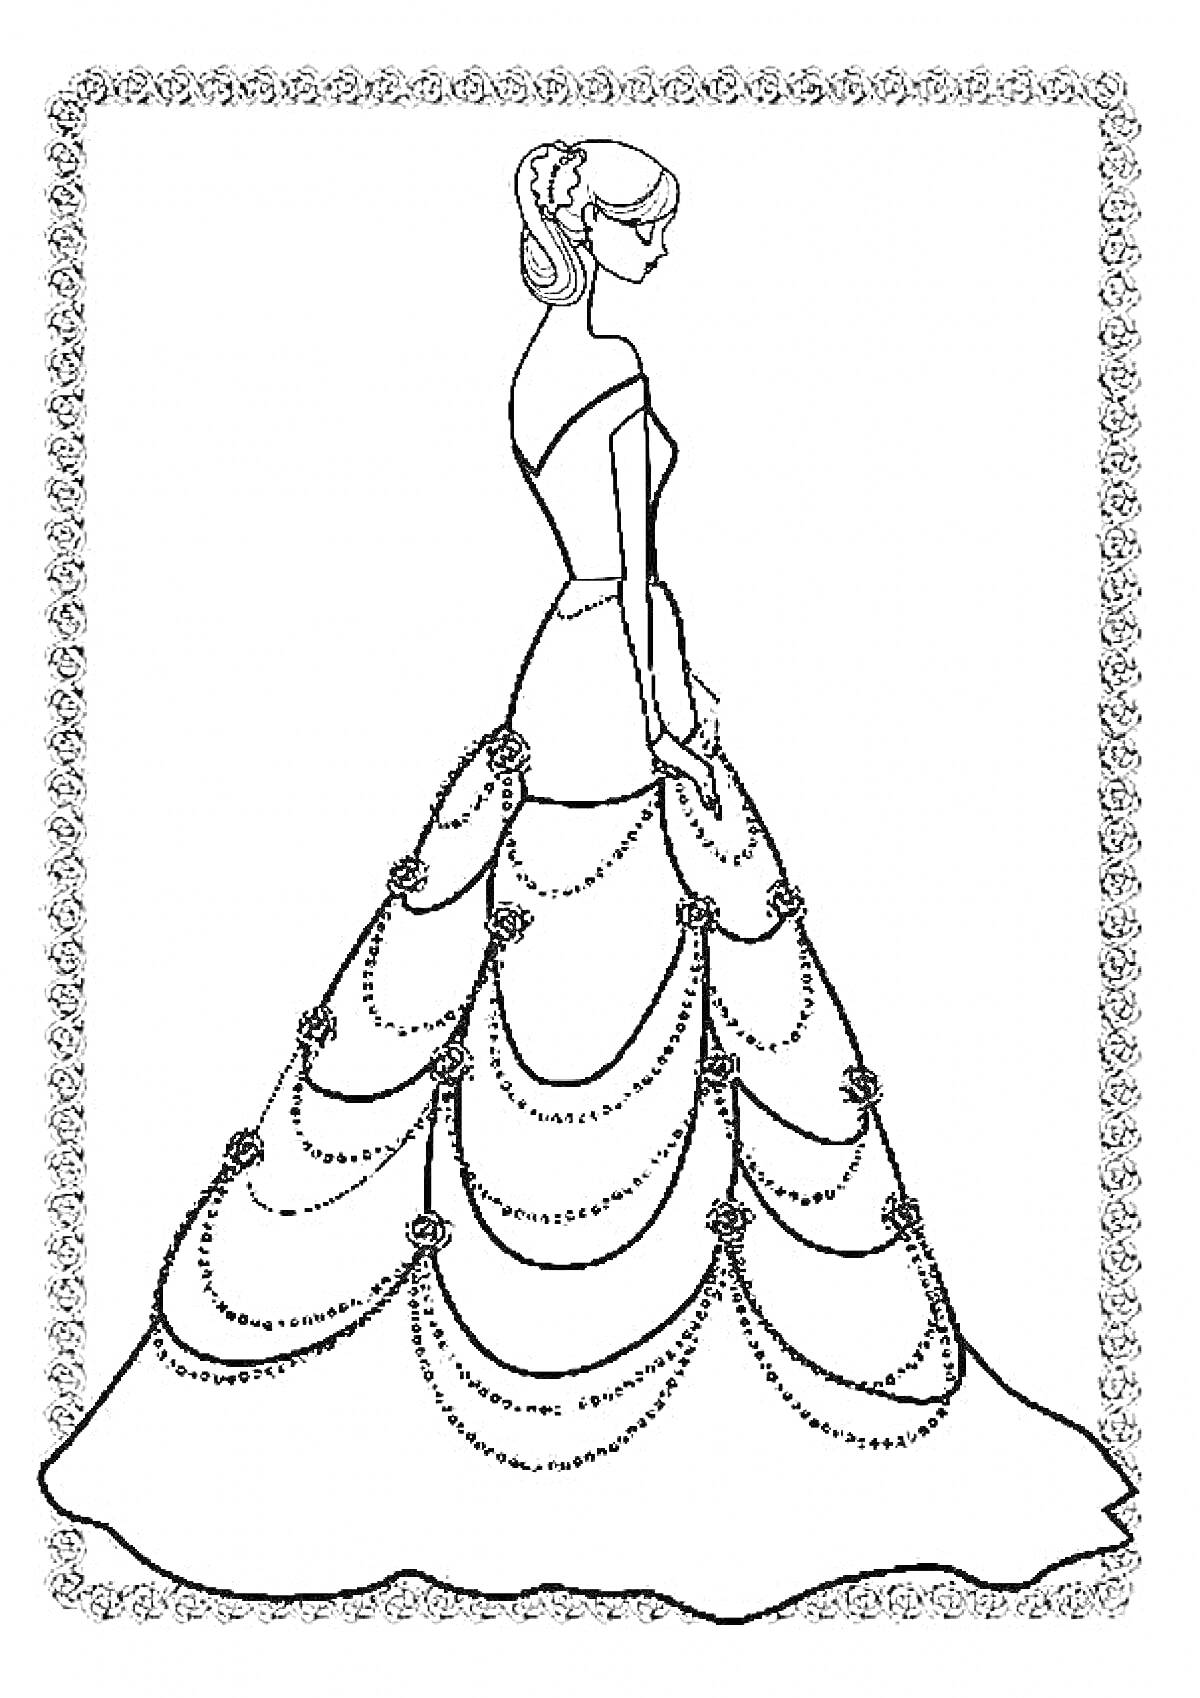 Девушка в длинном бальном платье с цепочками и цветами, в рамке с декоративным узором